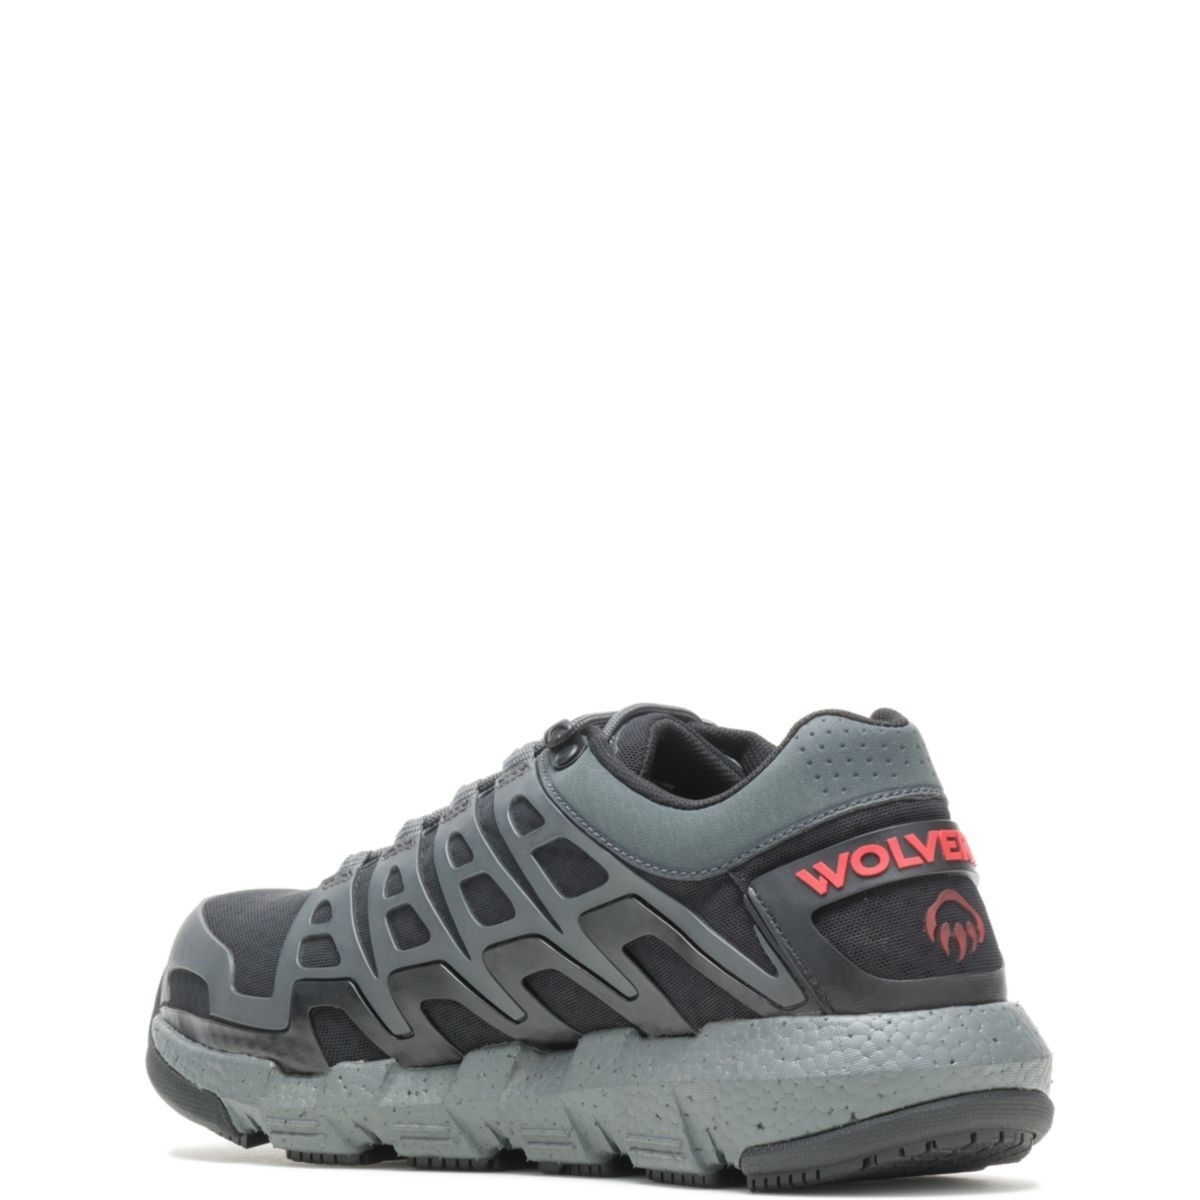 WOLVERINE Men's Rev Vent UltraSpringâ¢ DuraShocksÂ® CarbonMAXÂ® Composite Toe Work Shoe Charcoal - W211016 CHARCOAL - CHARCOAL, 8 X-Wide